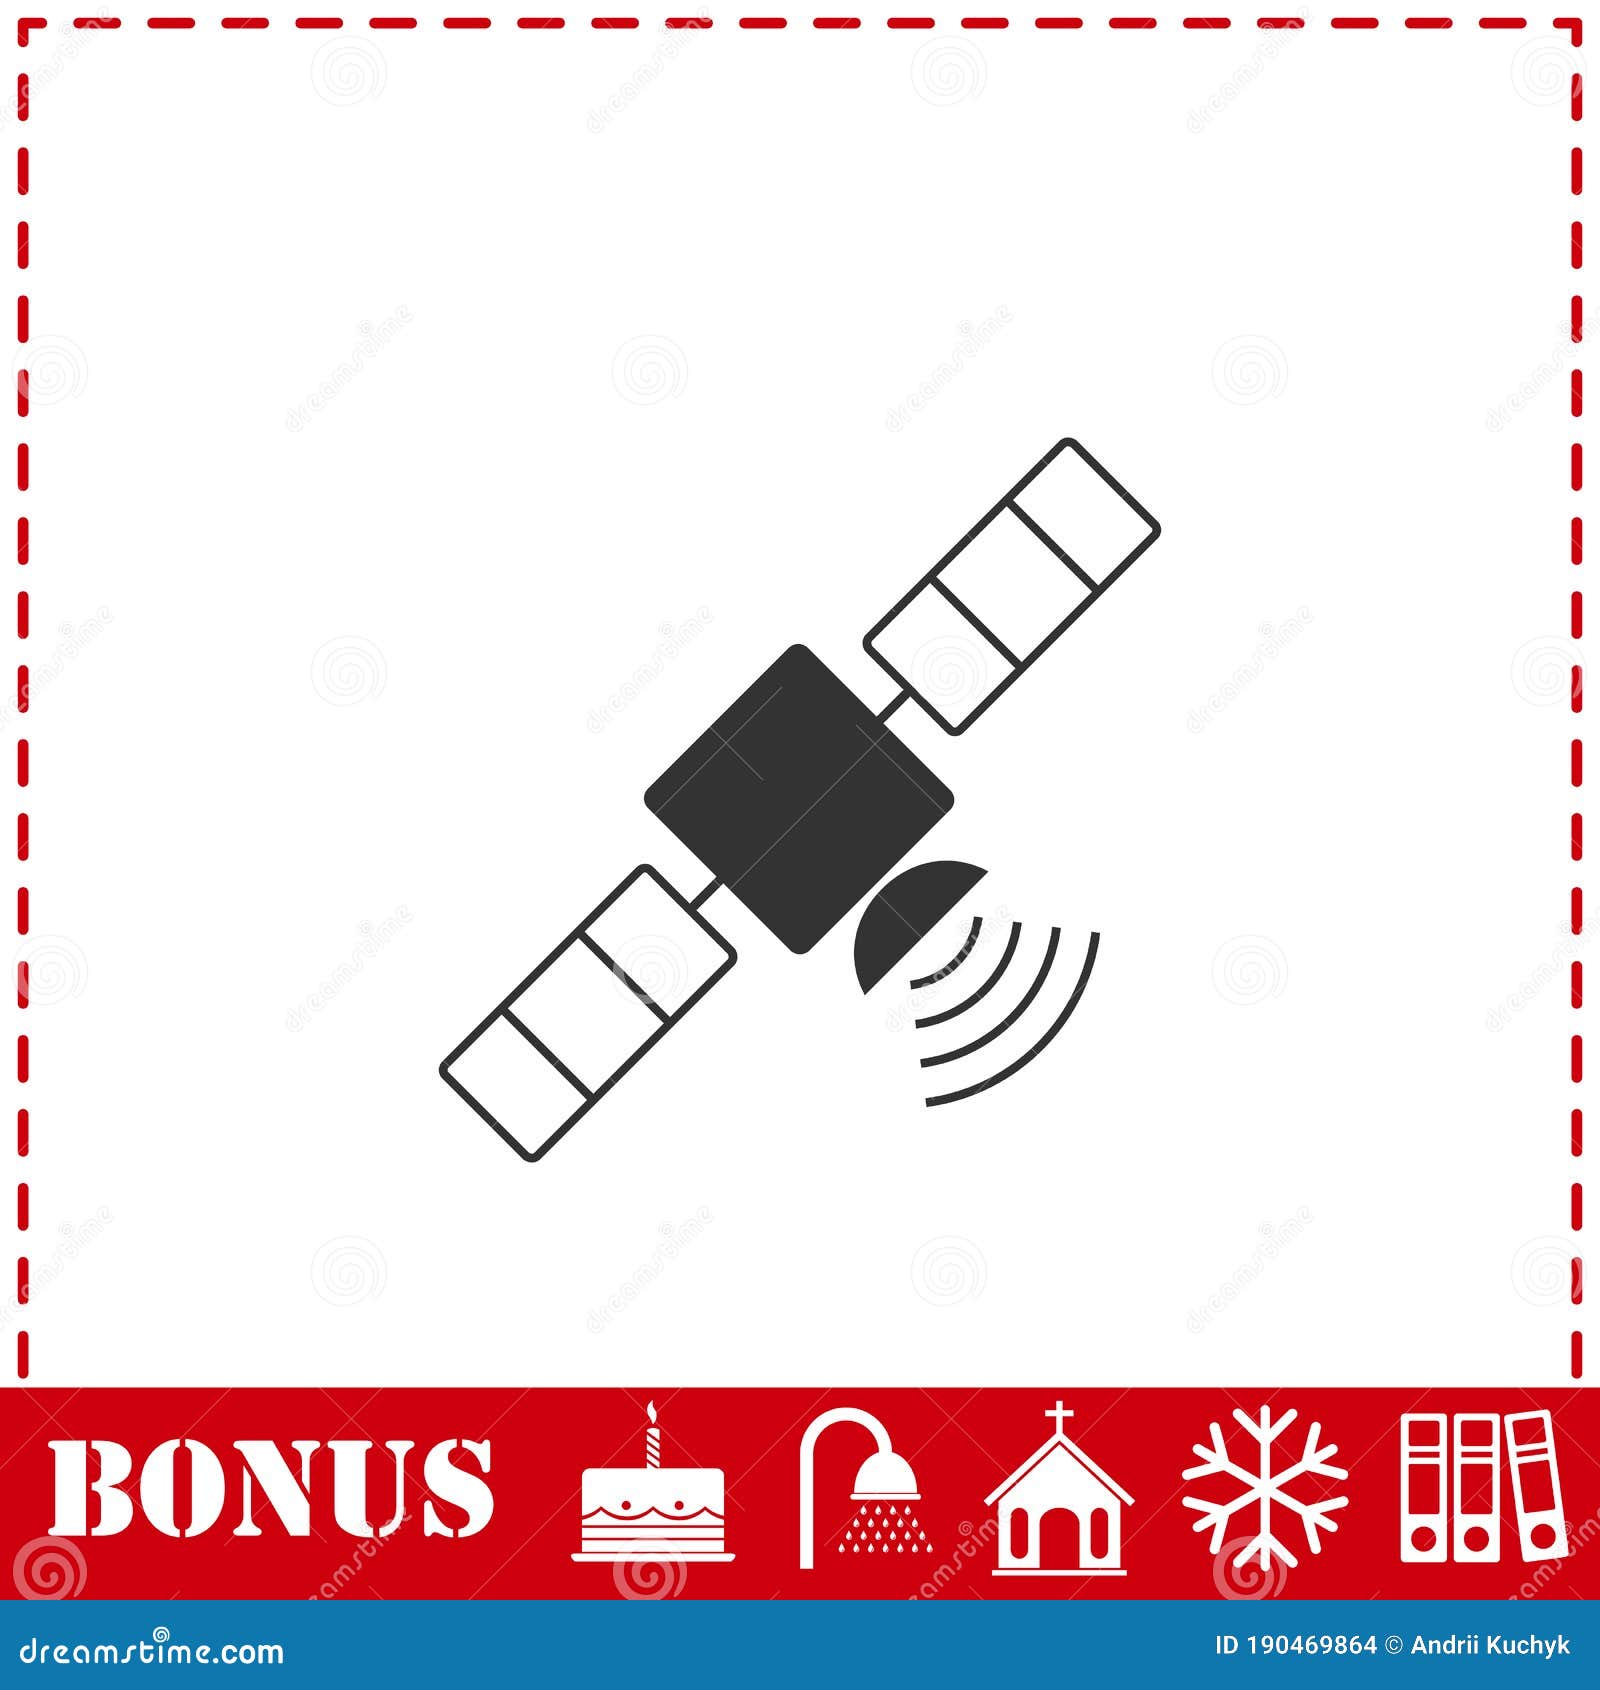 satelite icon flat